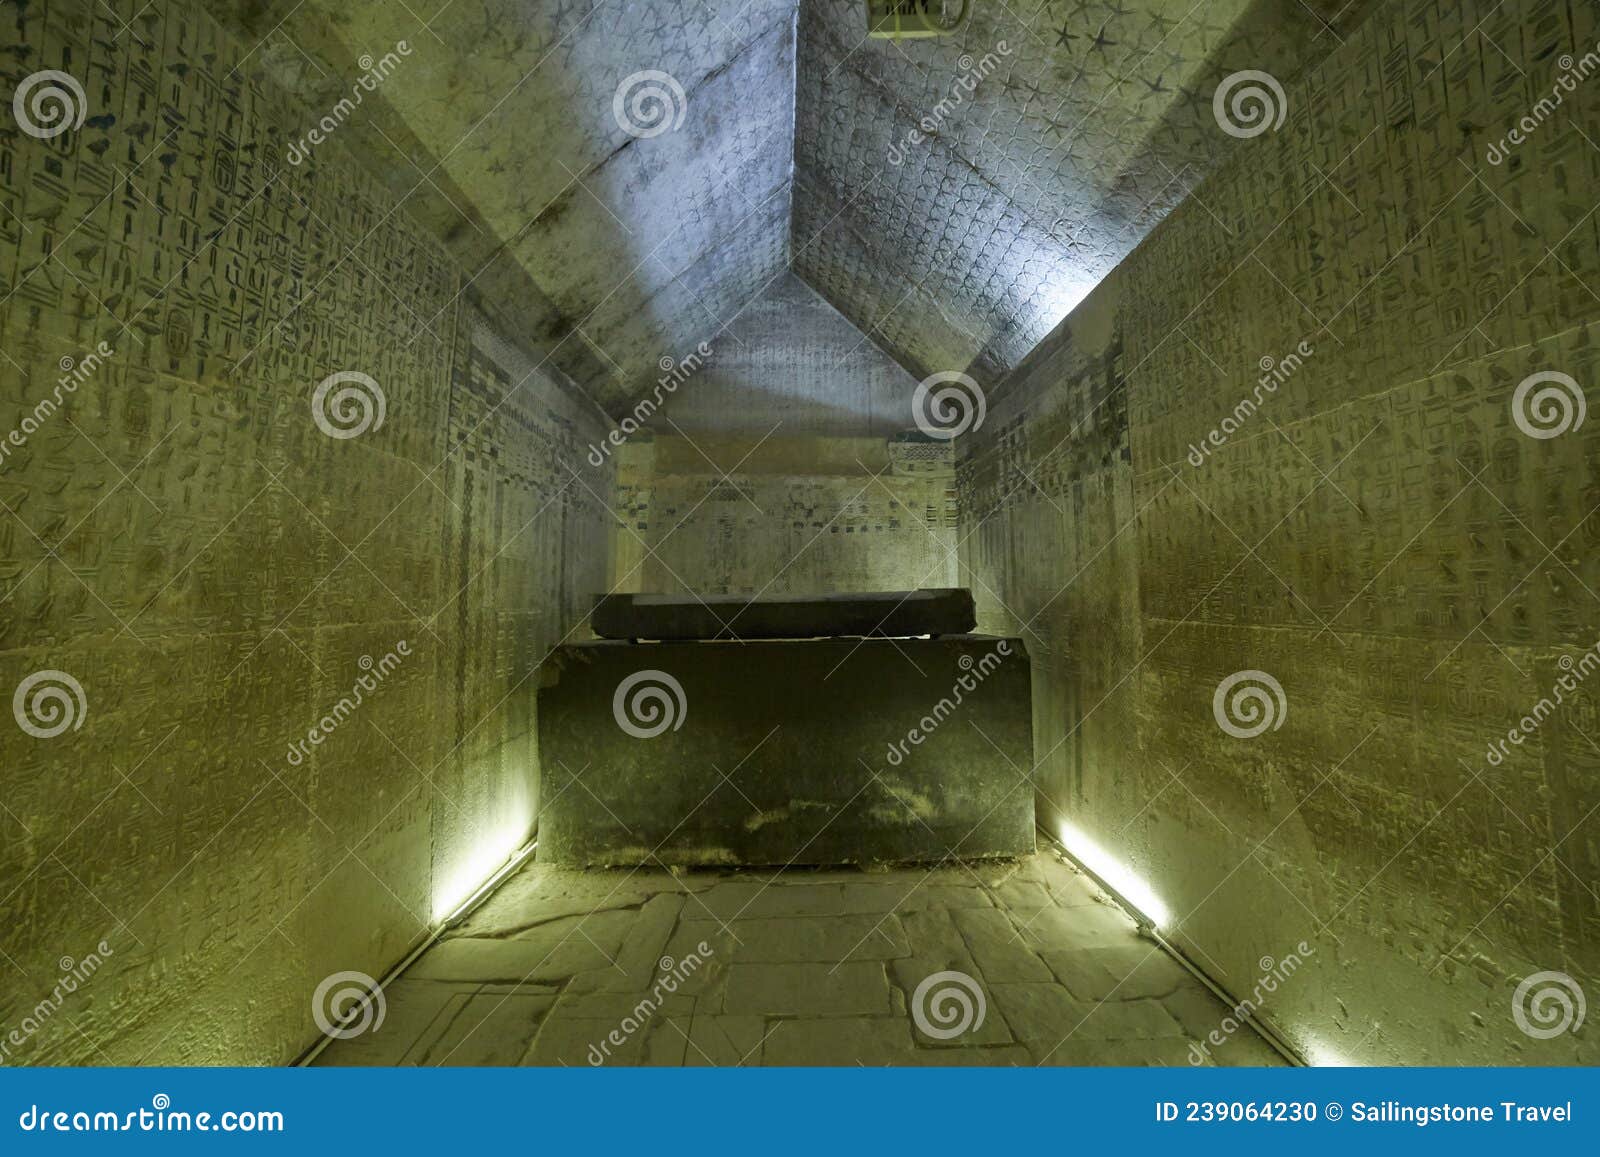 the pyramid of unas at saqqara, known for the pyramid texts